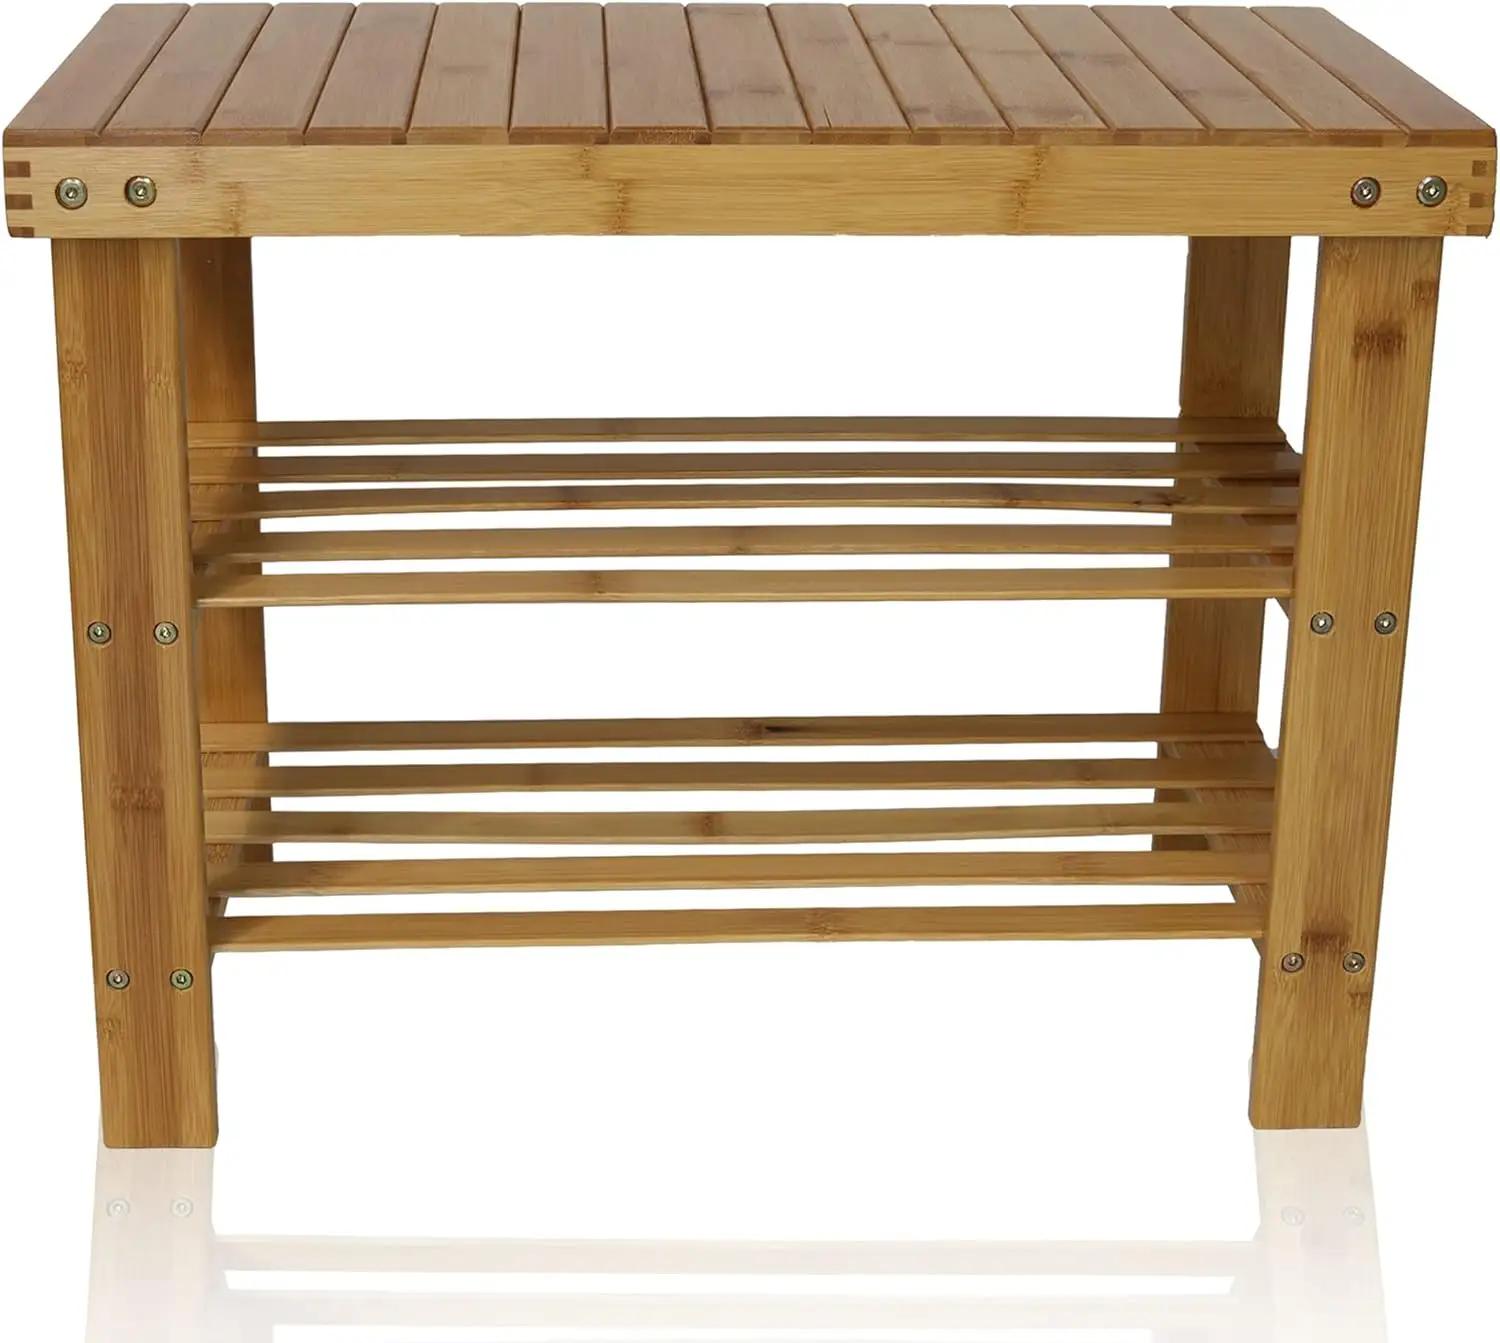 कम्बोहाउस टेक लकड़ी शॉवर बेंच सीट मल पैर आराम करना घर के अंदर या आउटडोर के लिए एकदम सही